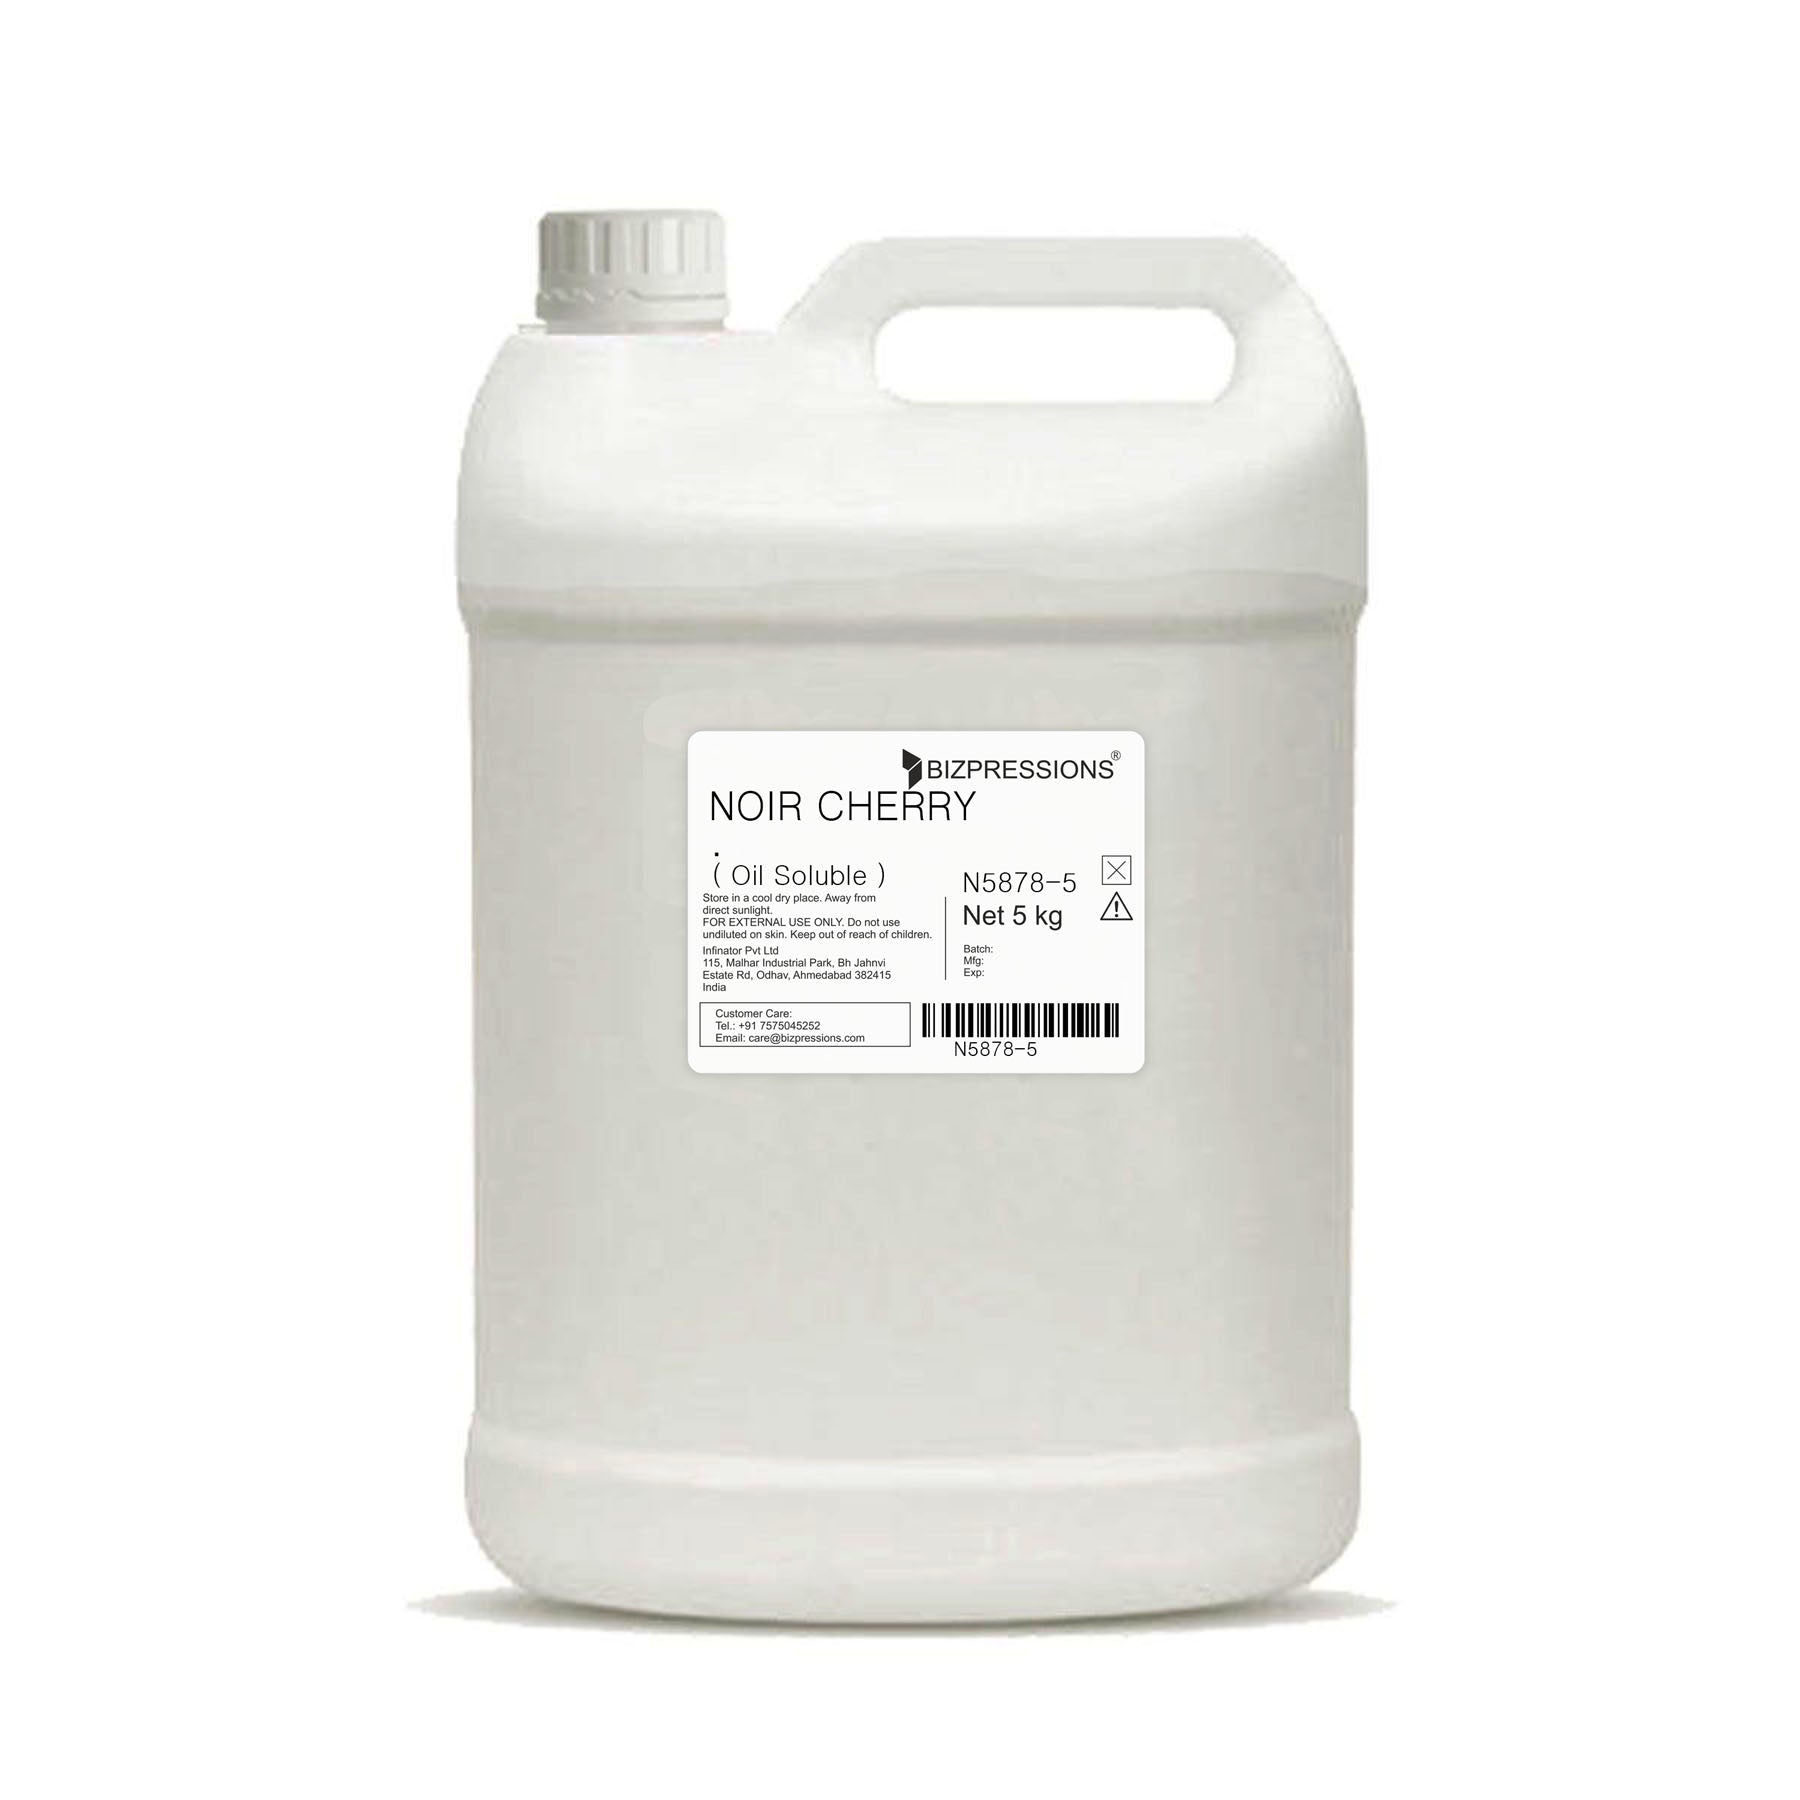 NOIR CHERRY - Fragrance ( Oil Soluble ) - 5 kg